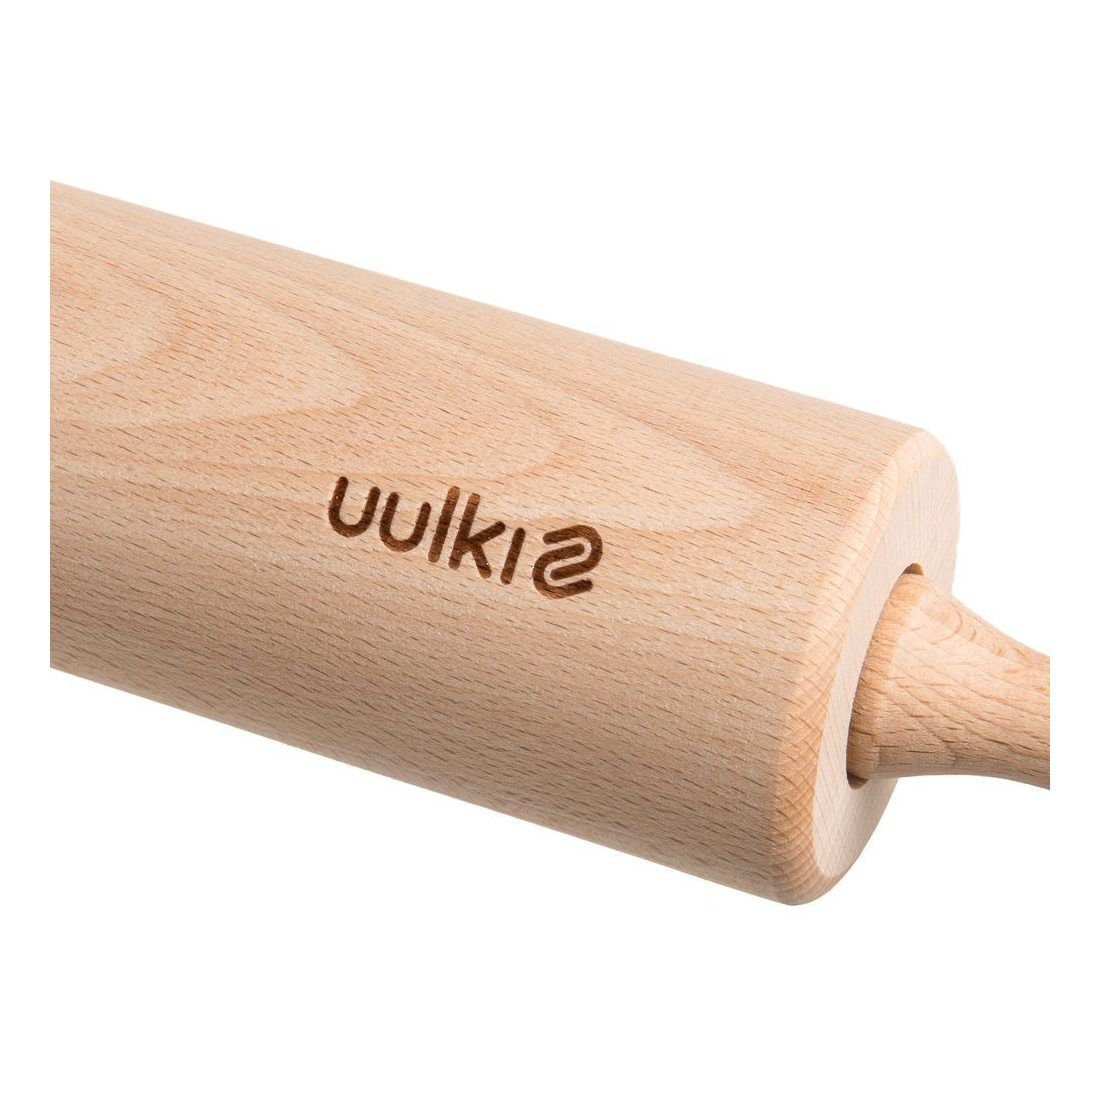 Uulki® Rouleau à Pâtisseri en Bois 720 grammes - Écologique en Hêtre Non Traité Artisanat traditionnel d'Europe (43 cm)